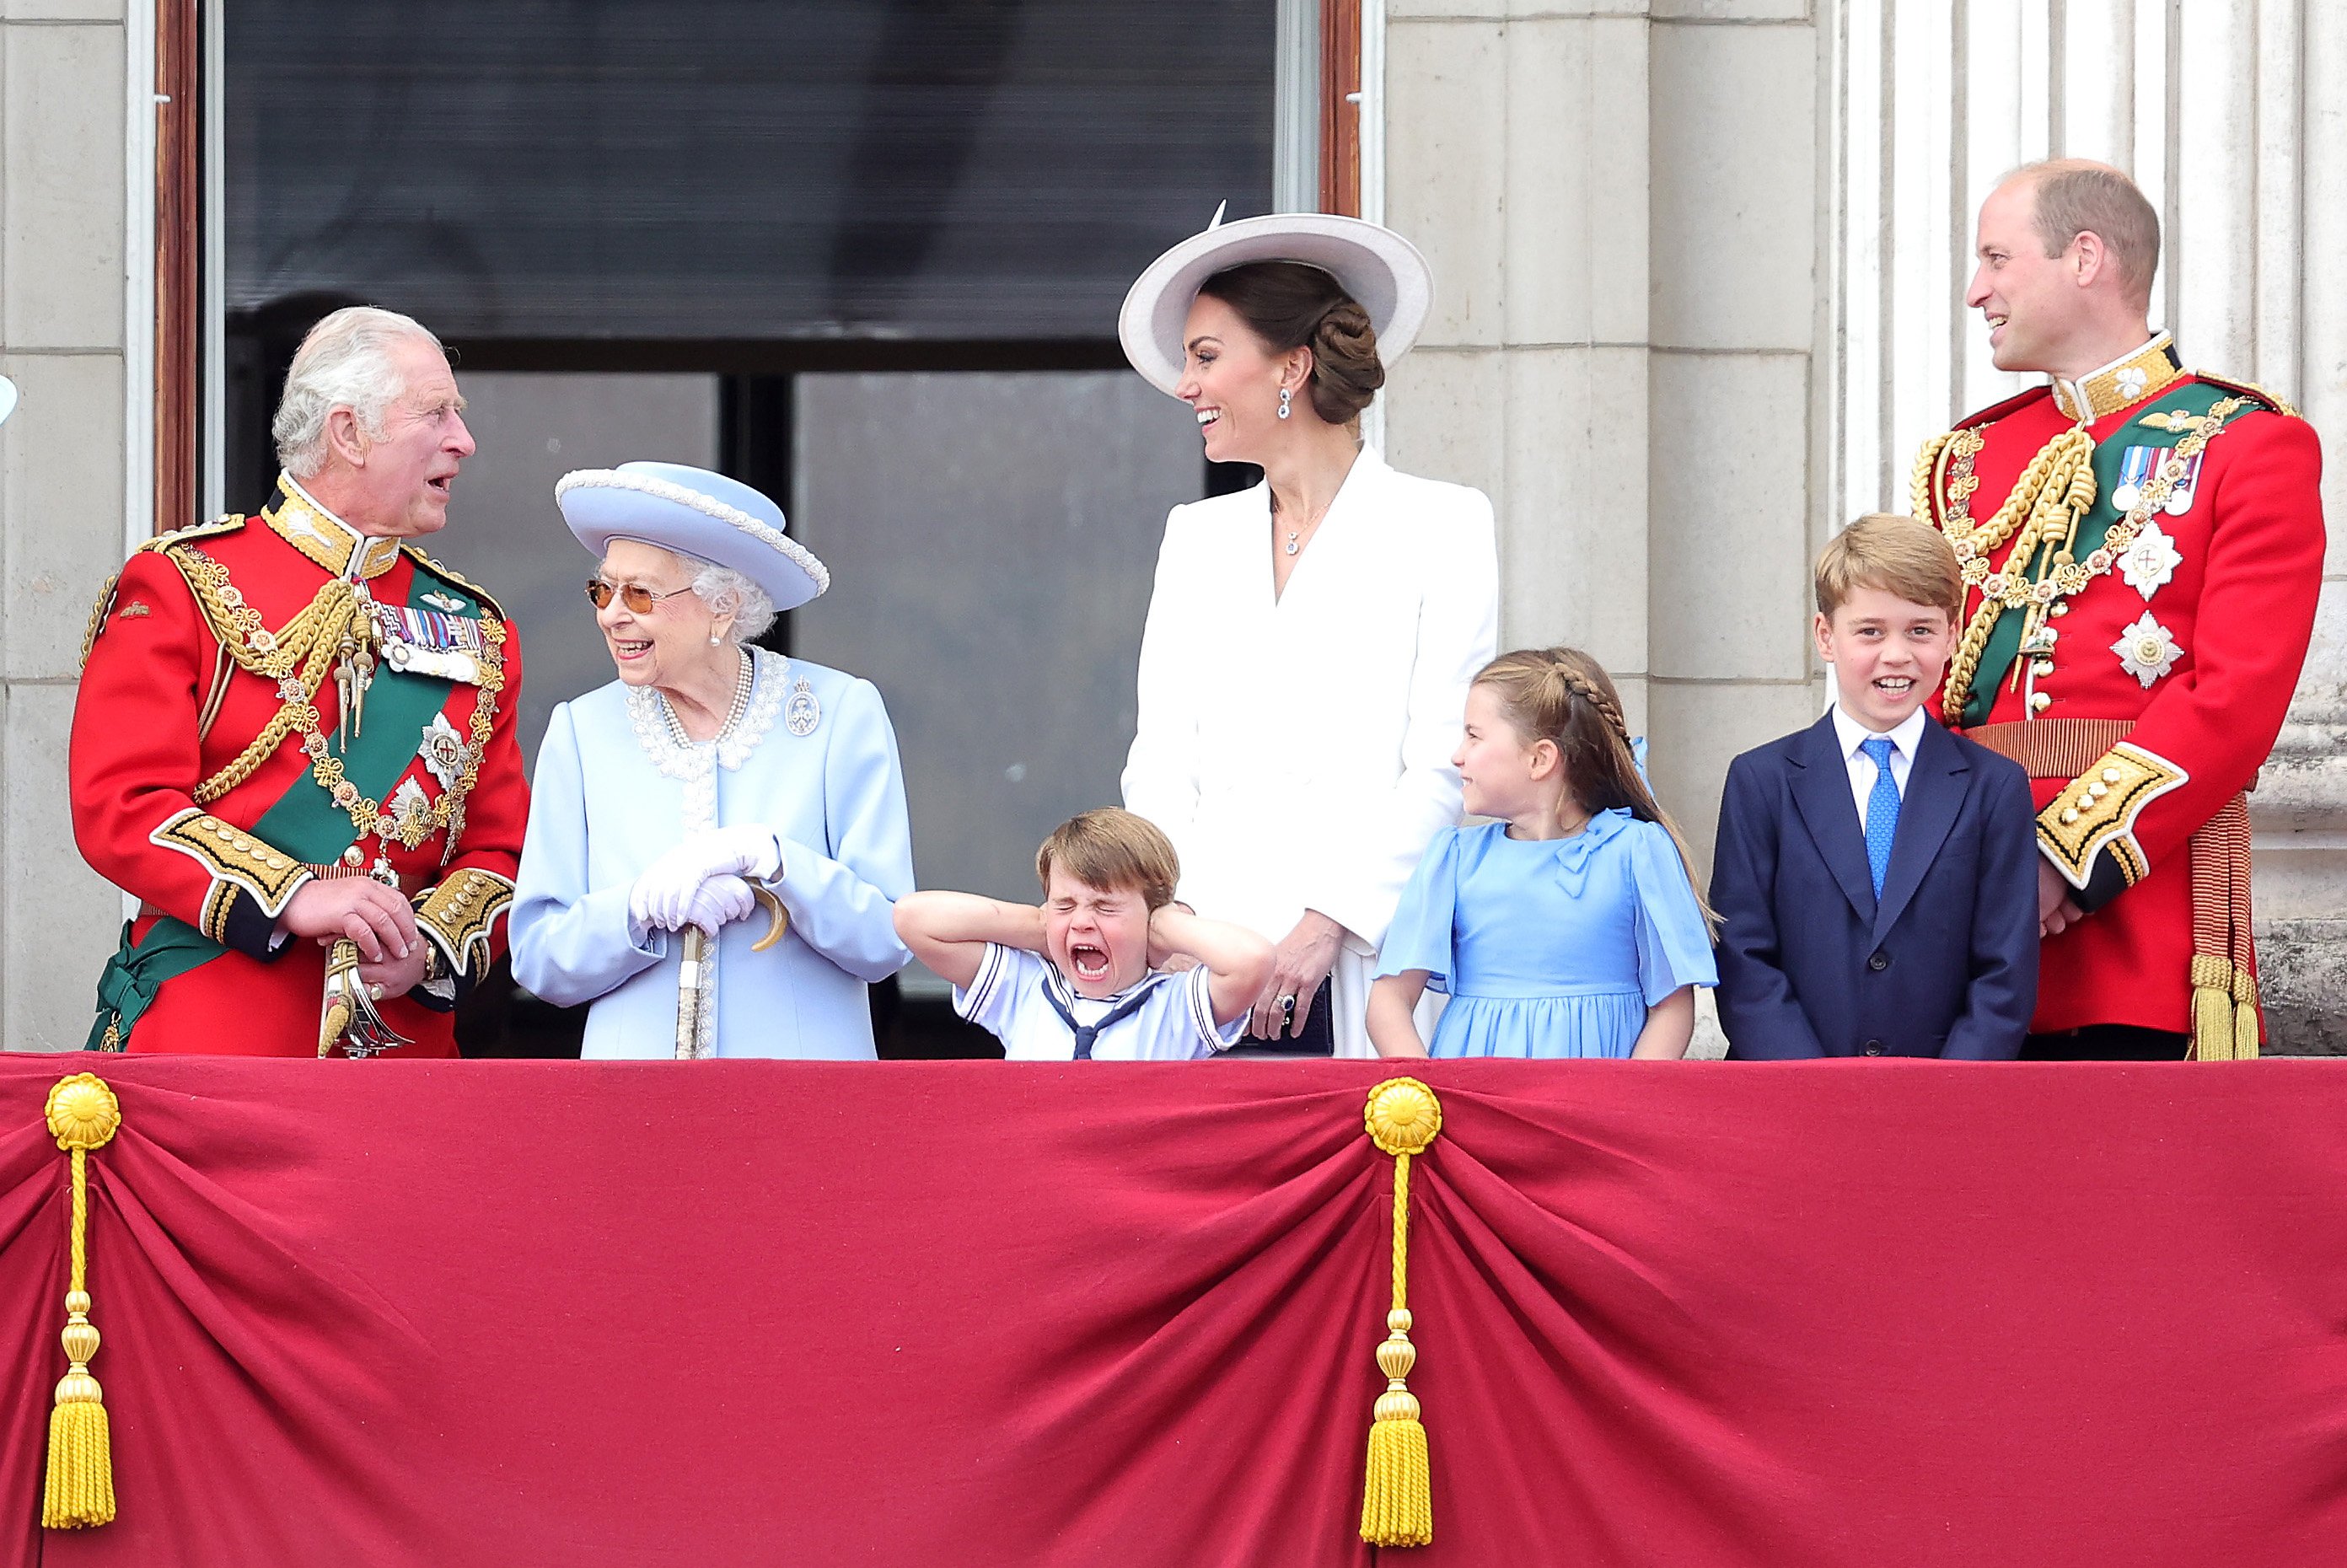 أربعة أيام من الاحتفالات بمناسبة اليوبيل البلاتيني للملكة إليزابيث الثانية في يونيو/حزيران. وشوهدت الملكة البالغة من العمر 96 عاما وهي تشاهد القوات العائدة من احتفال "استعراض الراية"، مع أعضاء آخرين من العائلة المالكة.